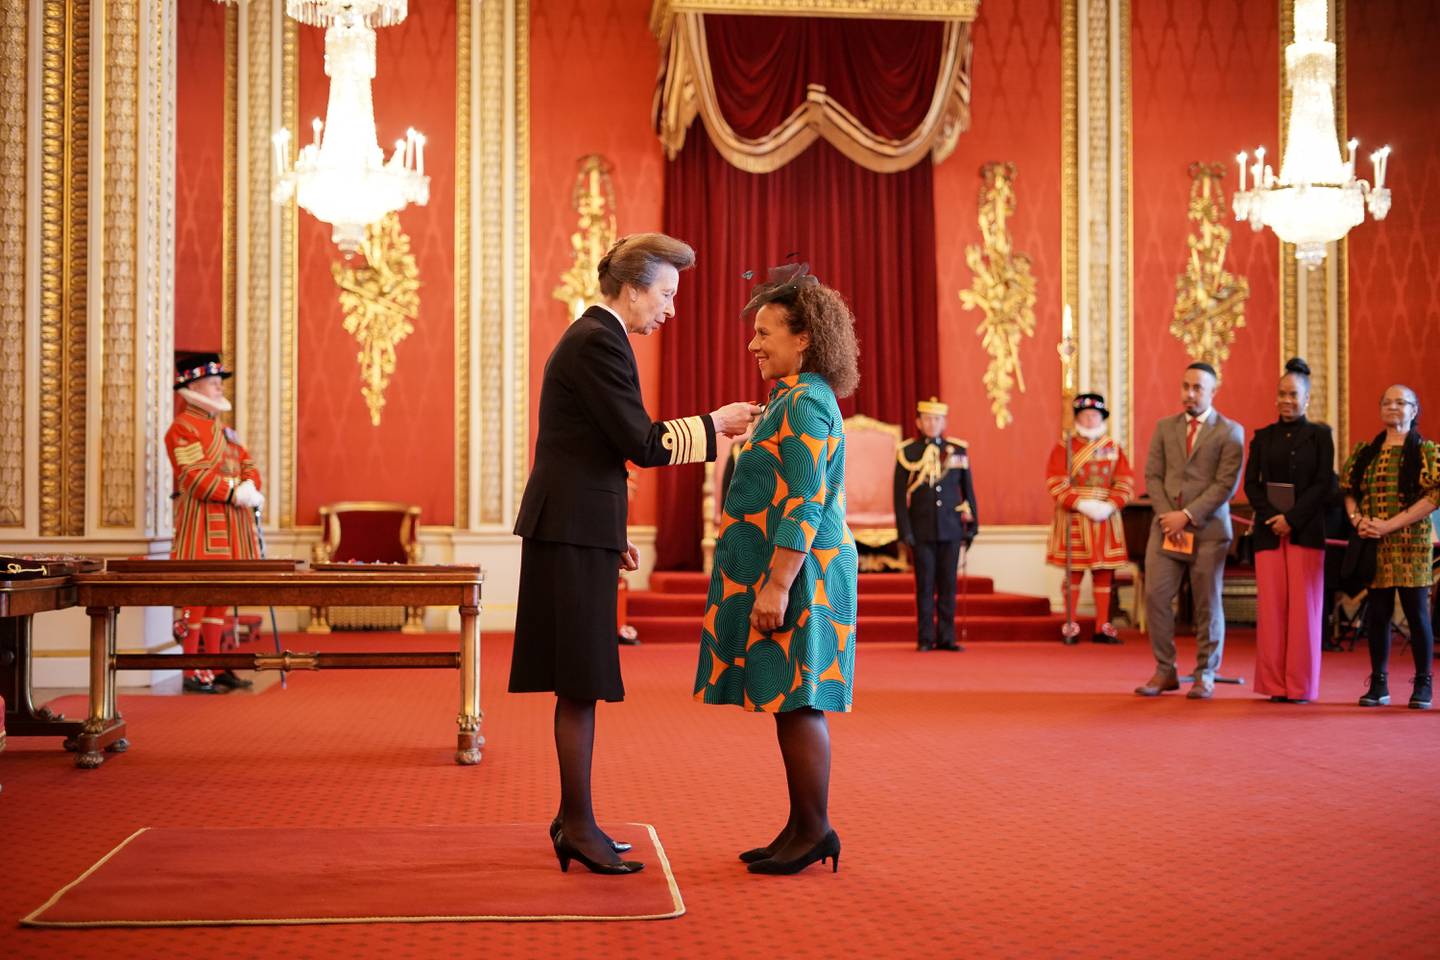 Chinyere Nwanoku, fondateur du Chineke !  Foundation, est fait Commandeur de l'Ordre de l'Empire britannique par la princesse royale au palais de Buckingham.  Photo: Aaron Chown